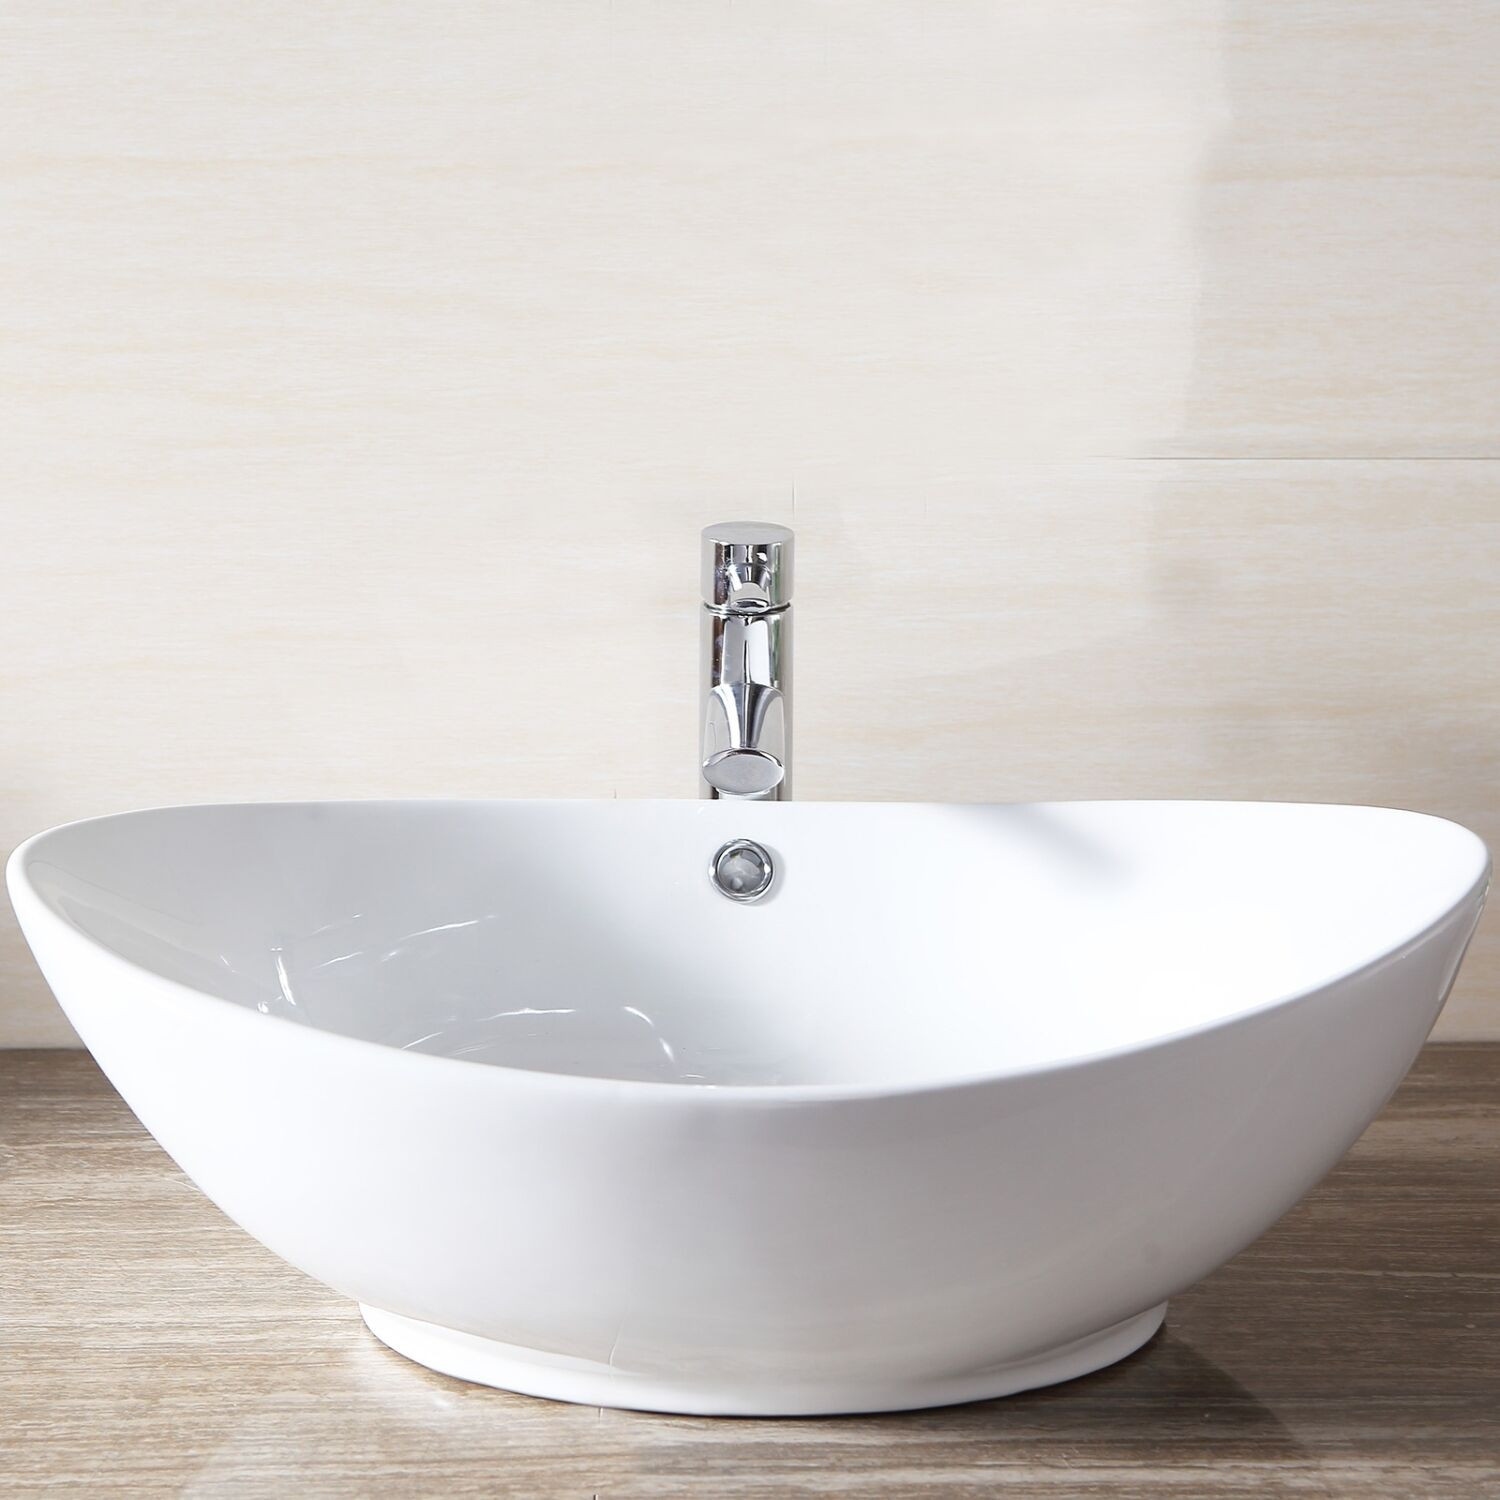 Bathroom Vanity Bowls
 Bathroom Porcelain Ceramic Sink Vessel Vanity Basin Bowl